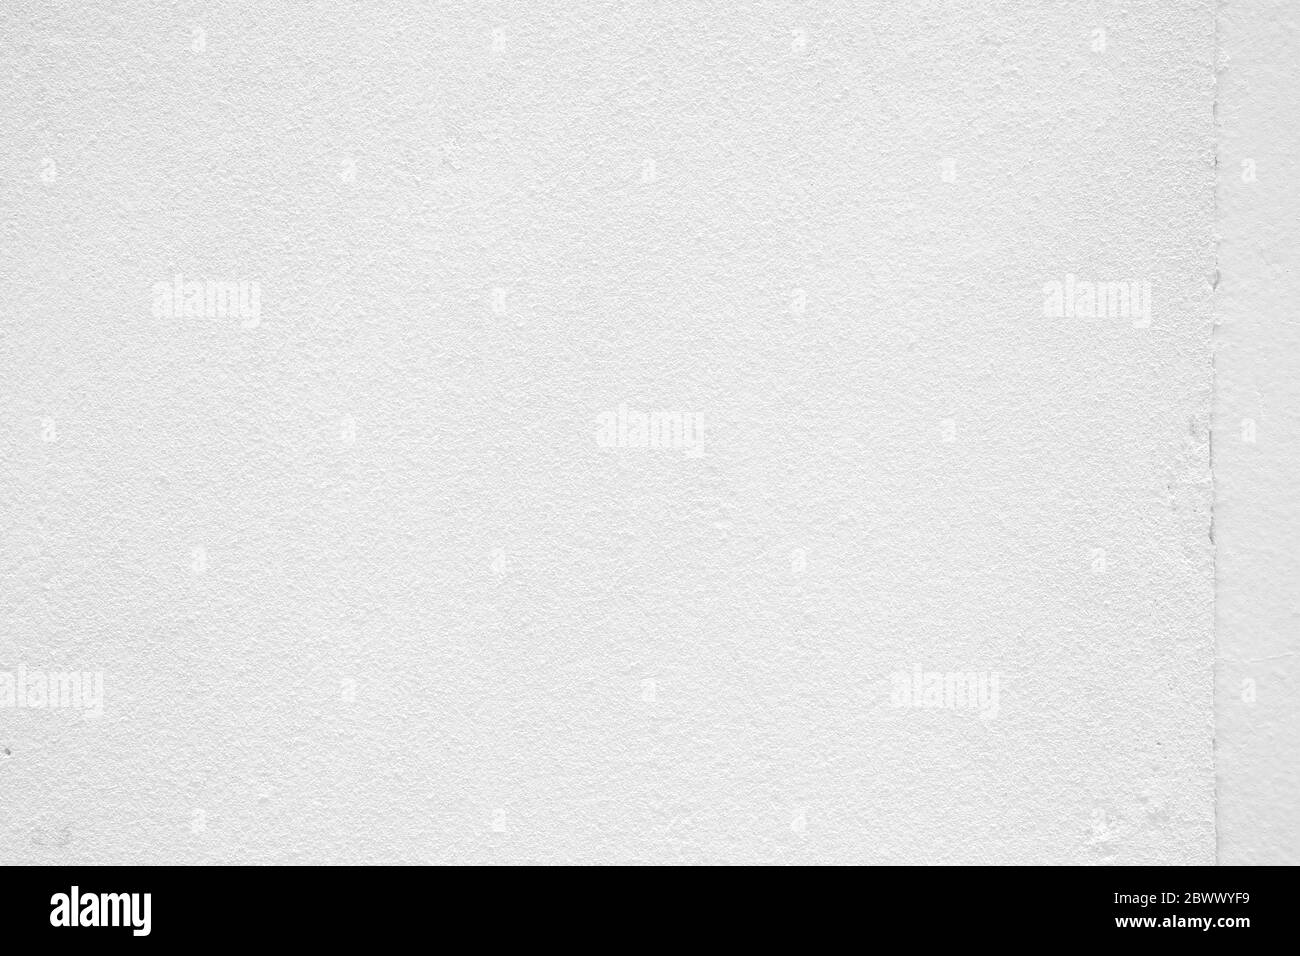 White Concrete Wall Texture Background. Stock Photo